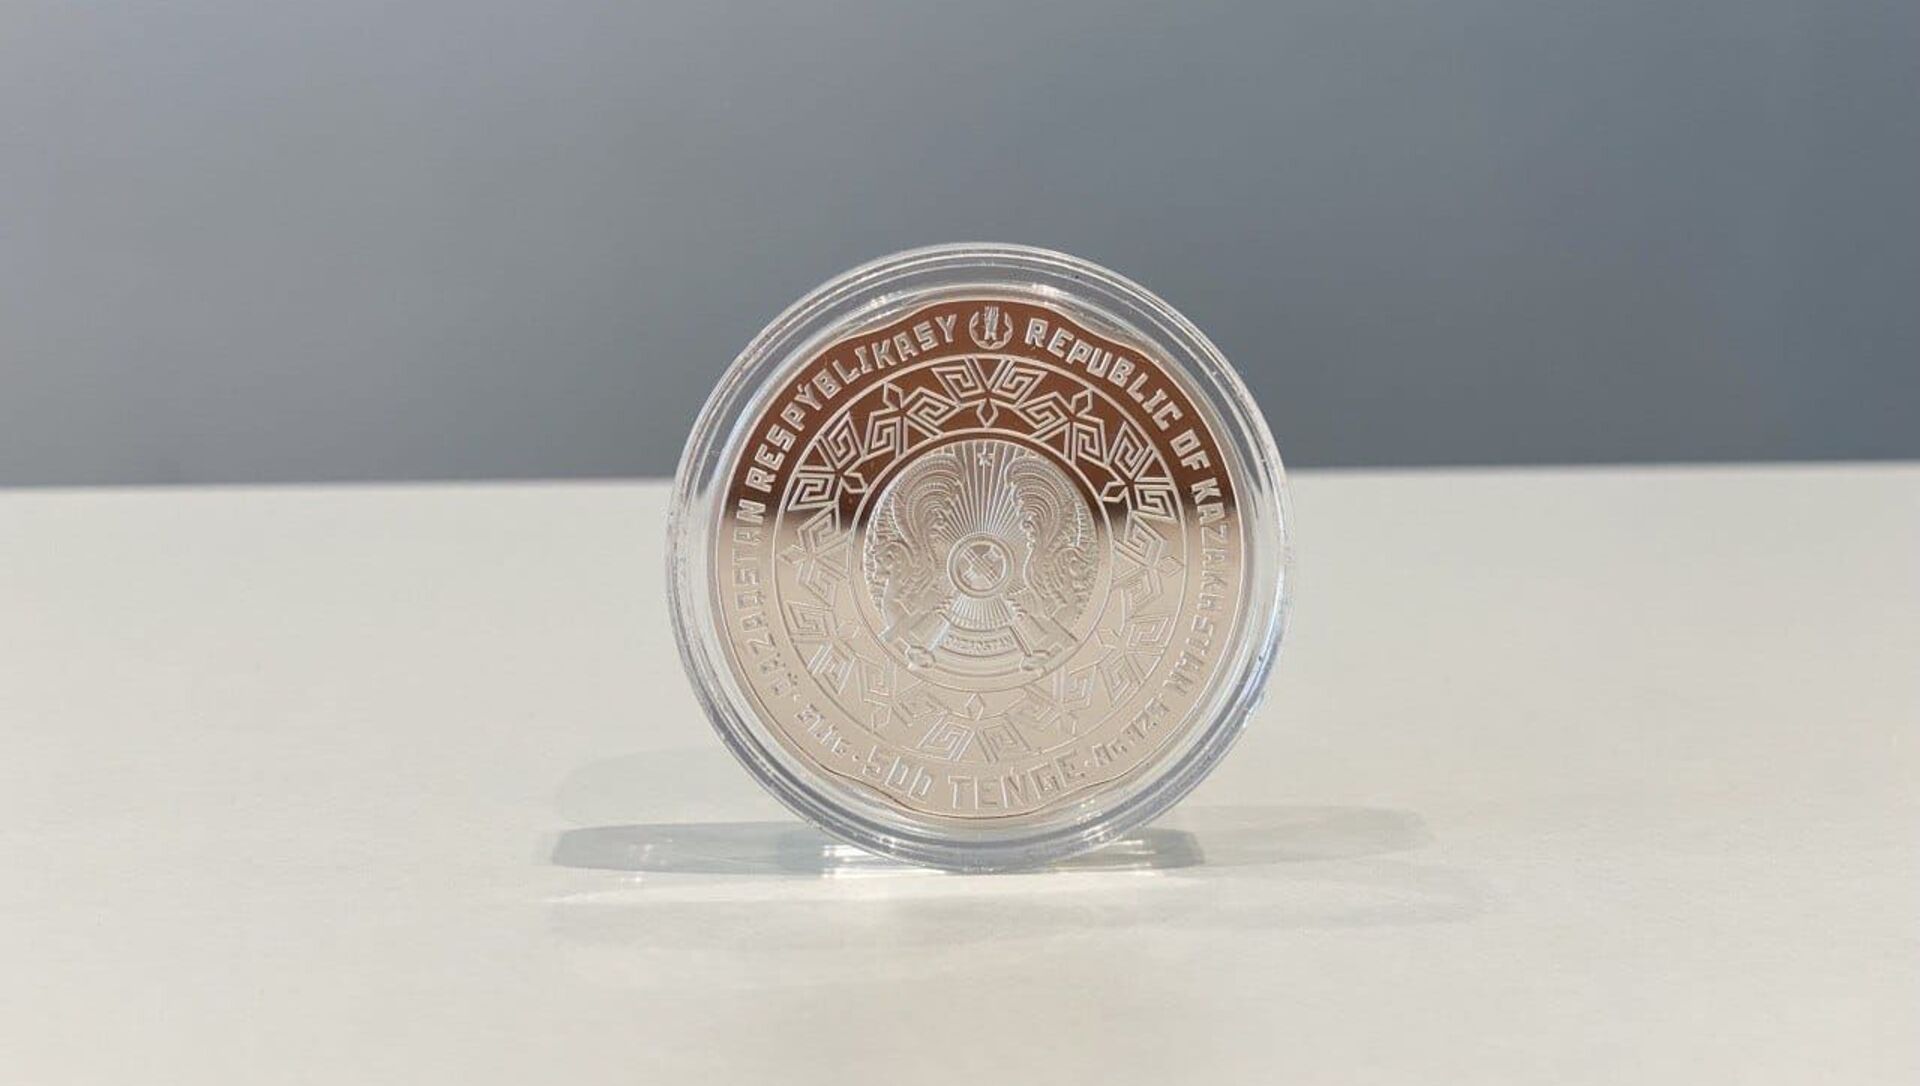 Семей ядролық полигонының жабылғанына 30 жыл толуына орай шығарылған монета - Sputnik Казахстан, 1920, 27.08.2021